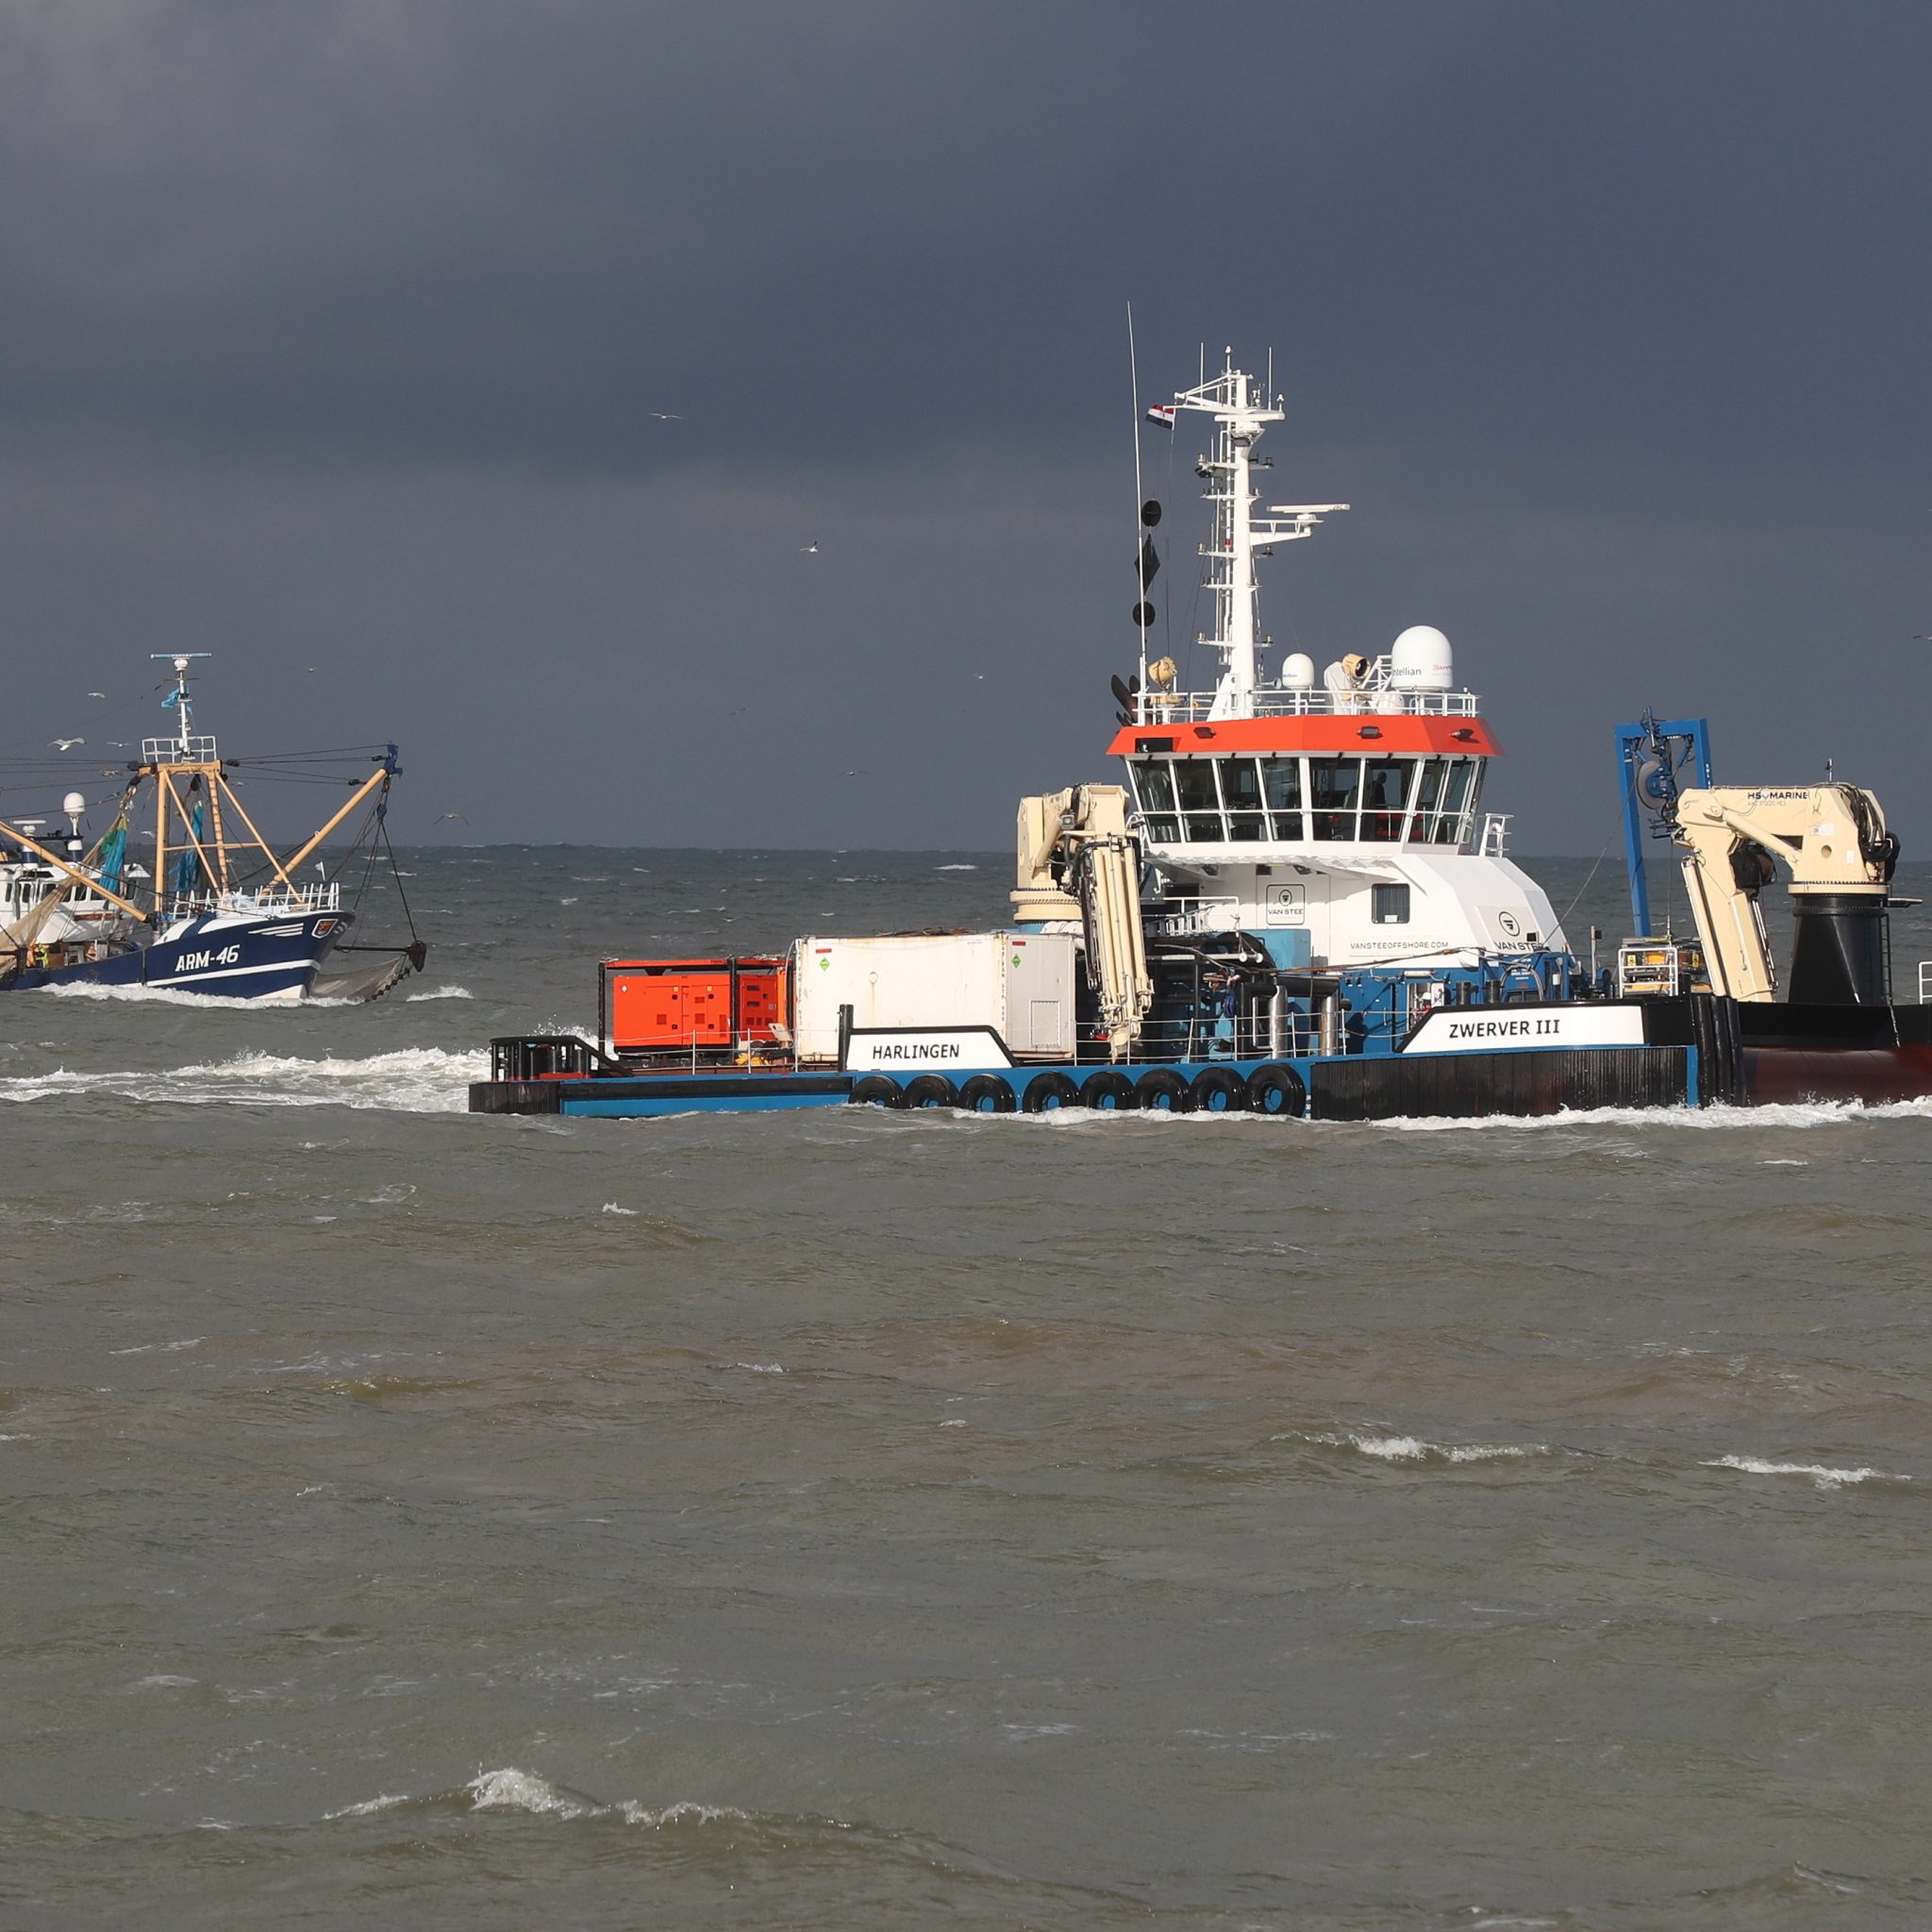 Het offshorevaartuig Zwerver III van Van Stee uit Harlingen met de garnalenkotter ARM-46 in haar kielzog in de aanloop naar Scheveningen. (Foto Bram Pronk)